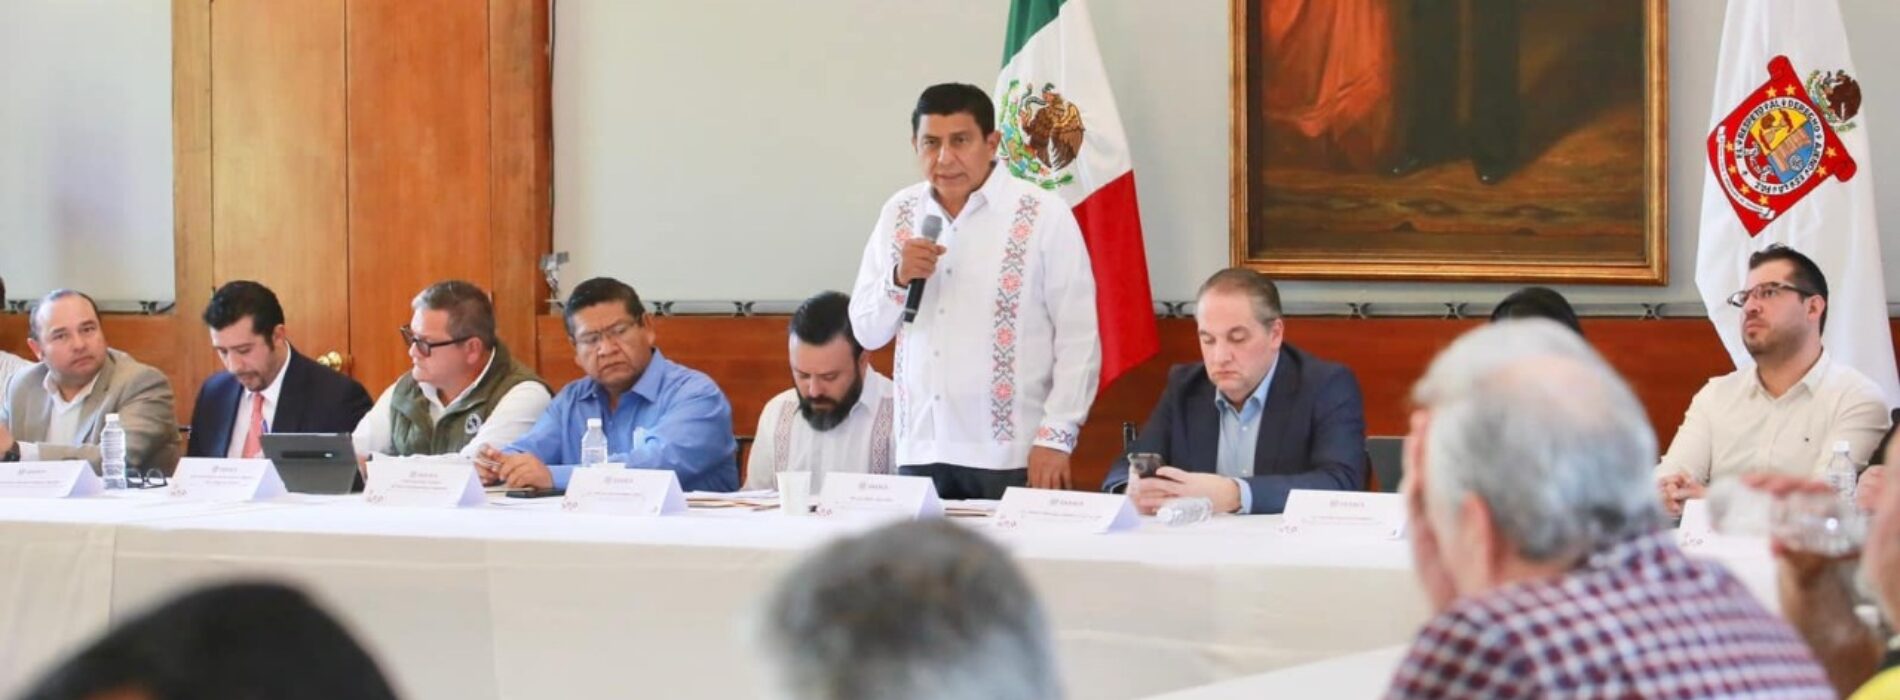 Contará Oaxaca con un GRAME, anuncia el gobernador Salomón Jara